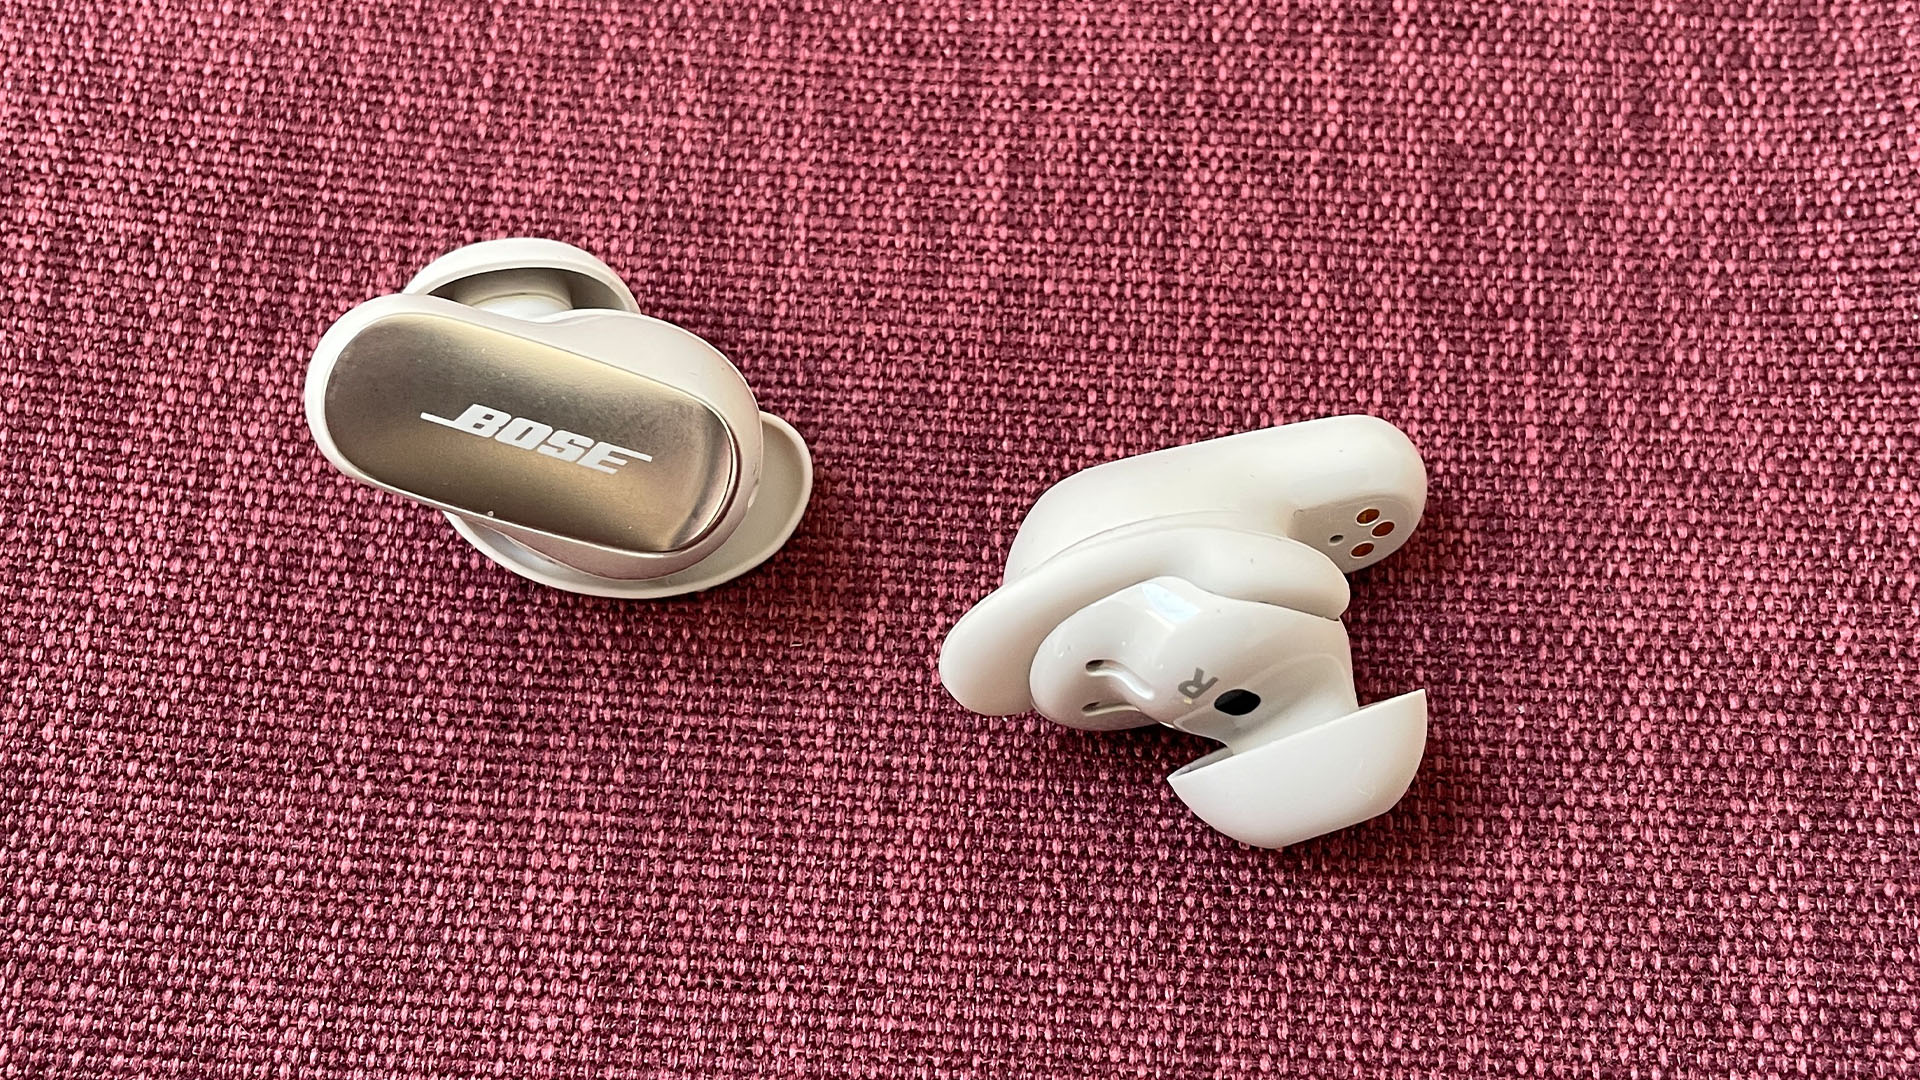 Kulak içi kulaklıklar: Bose QuietComfort Ultra Earbuds